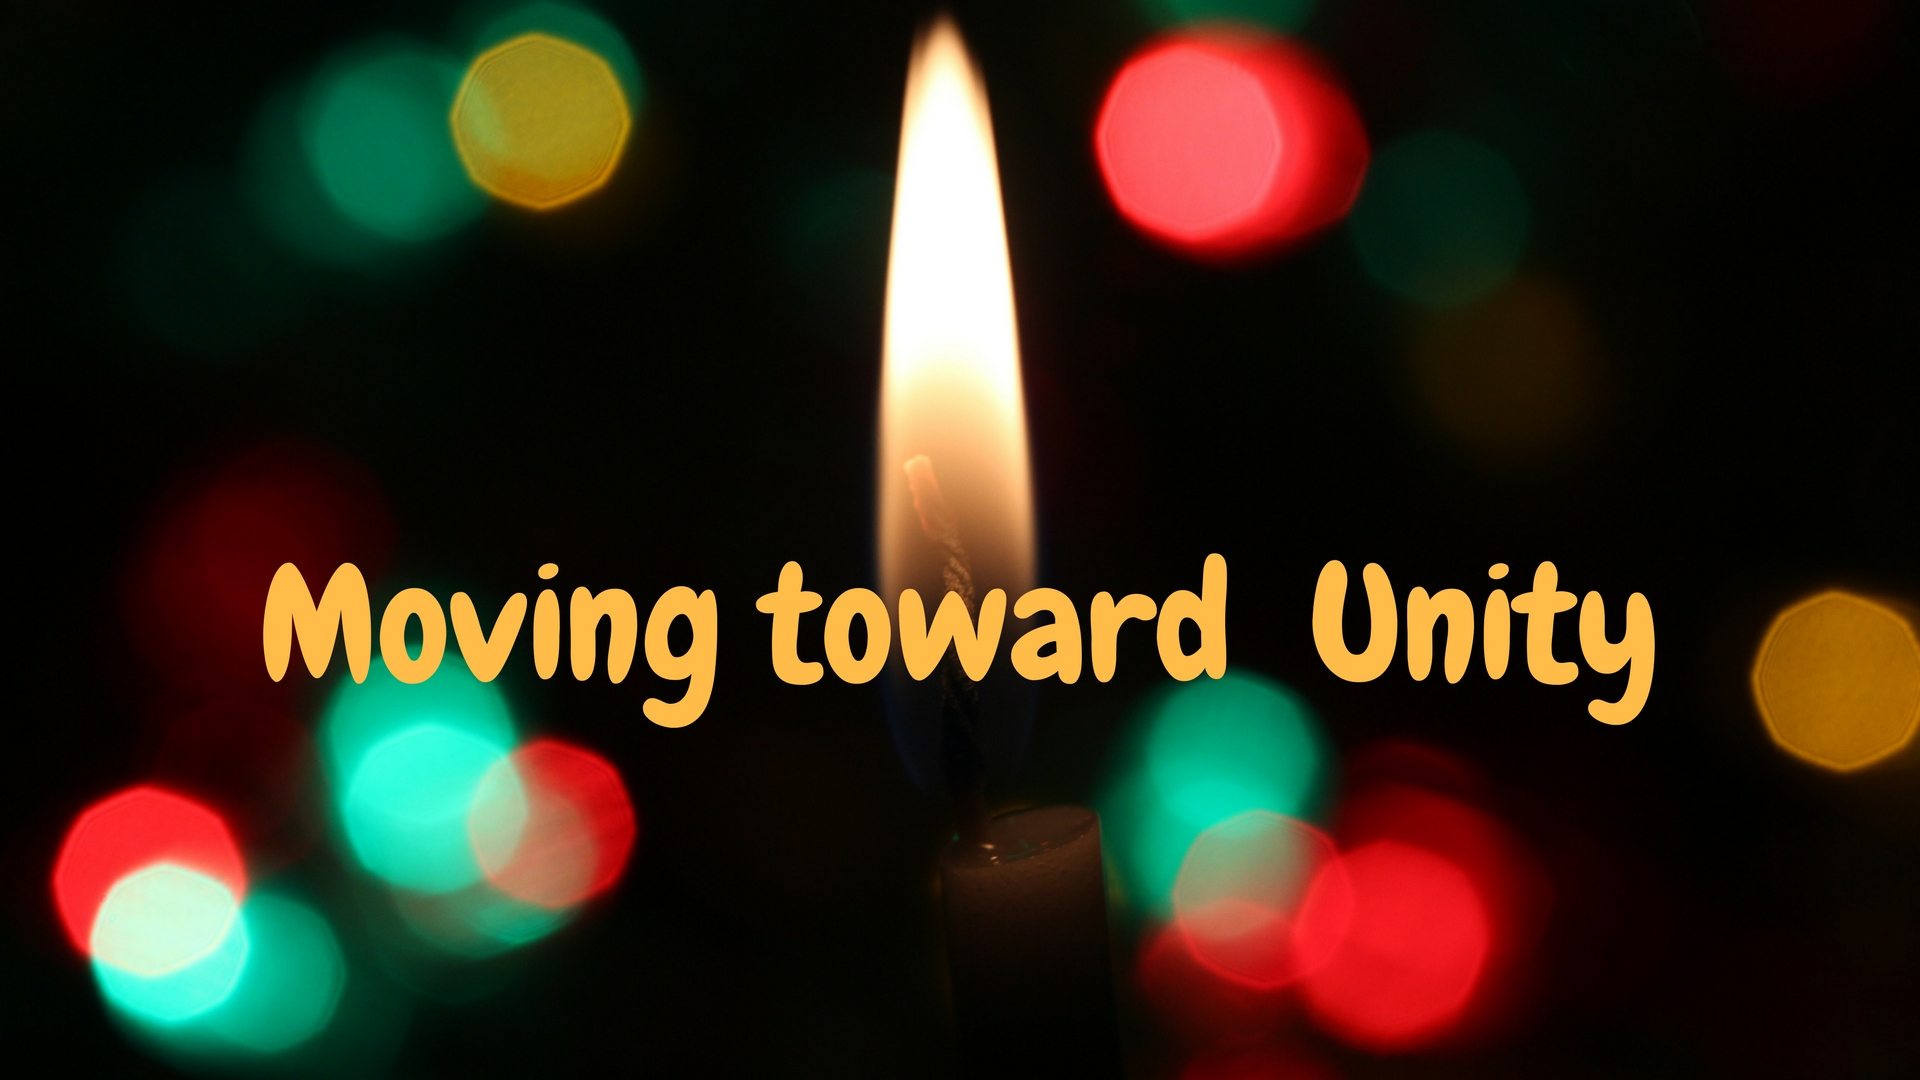 Moving Toward Unity - Unsplash - Canva